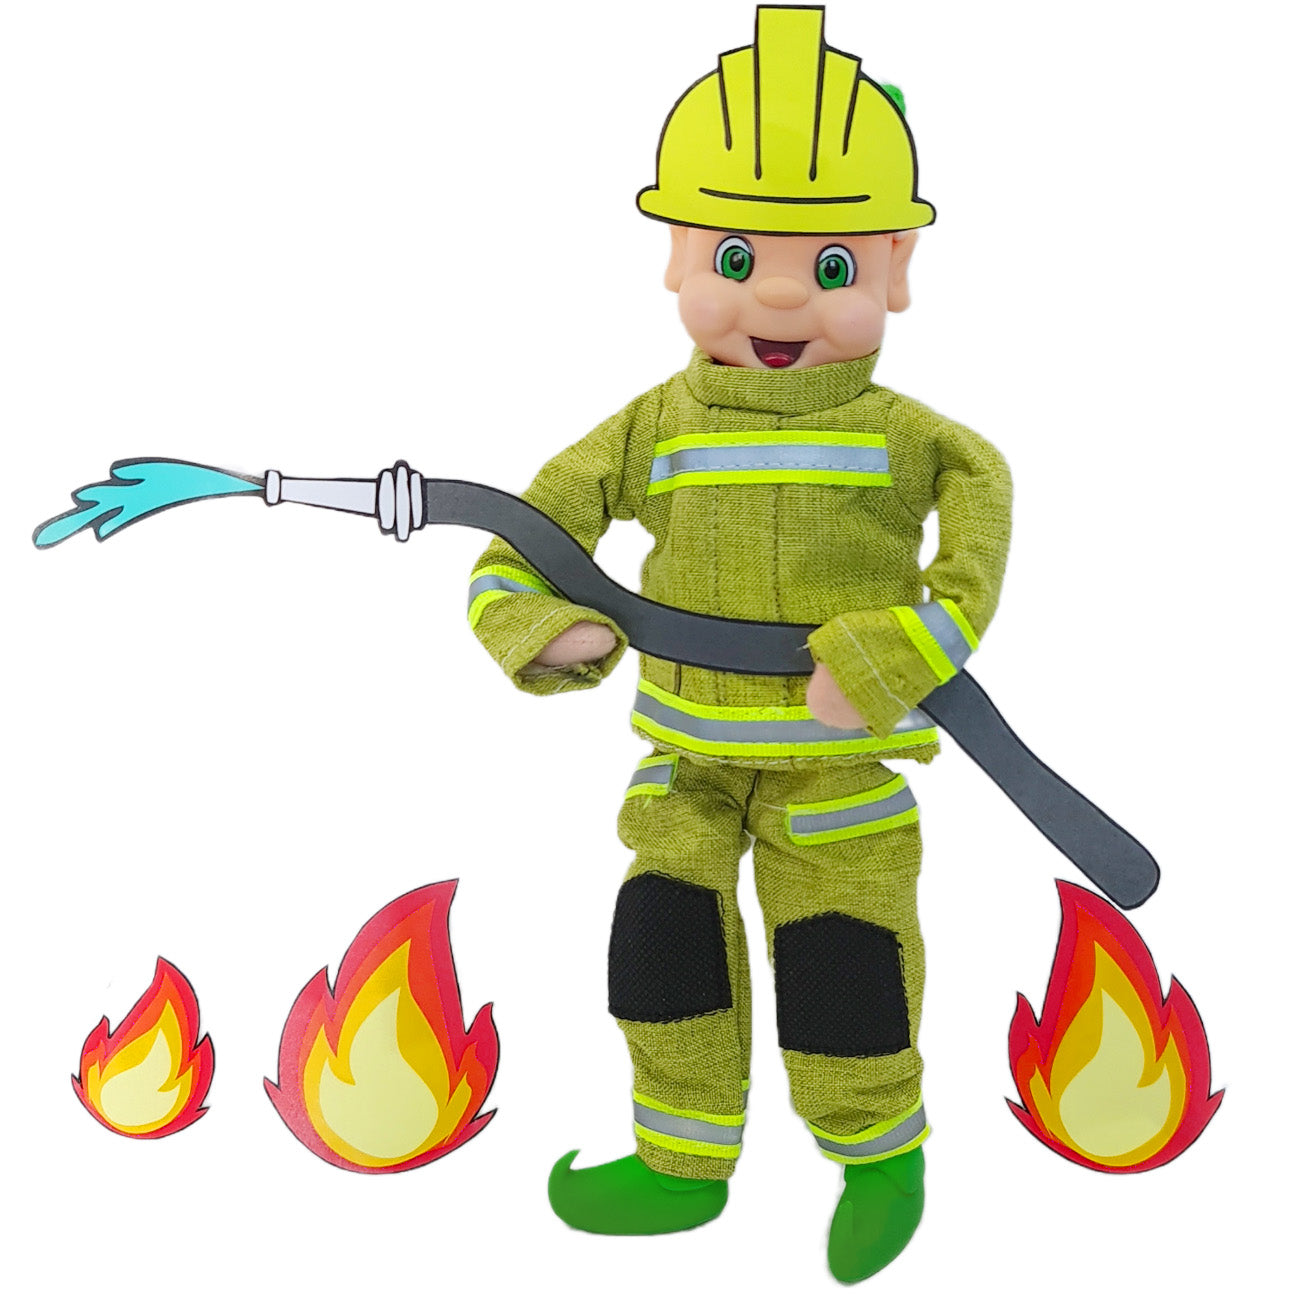 Fireman Elf Costume with printable